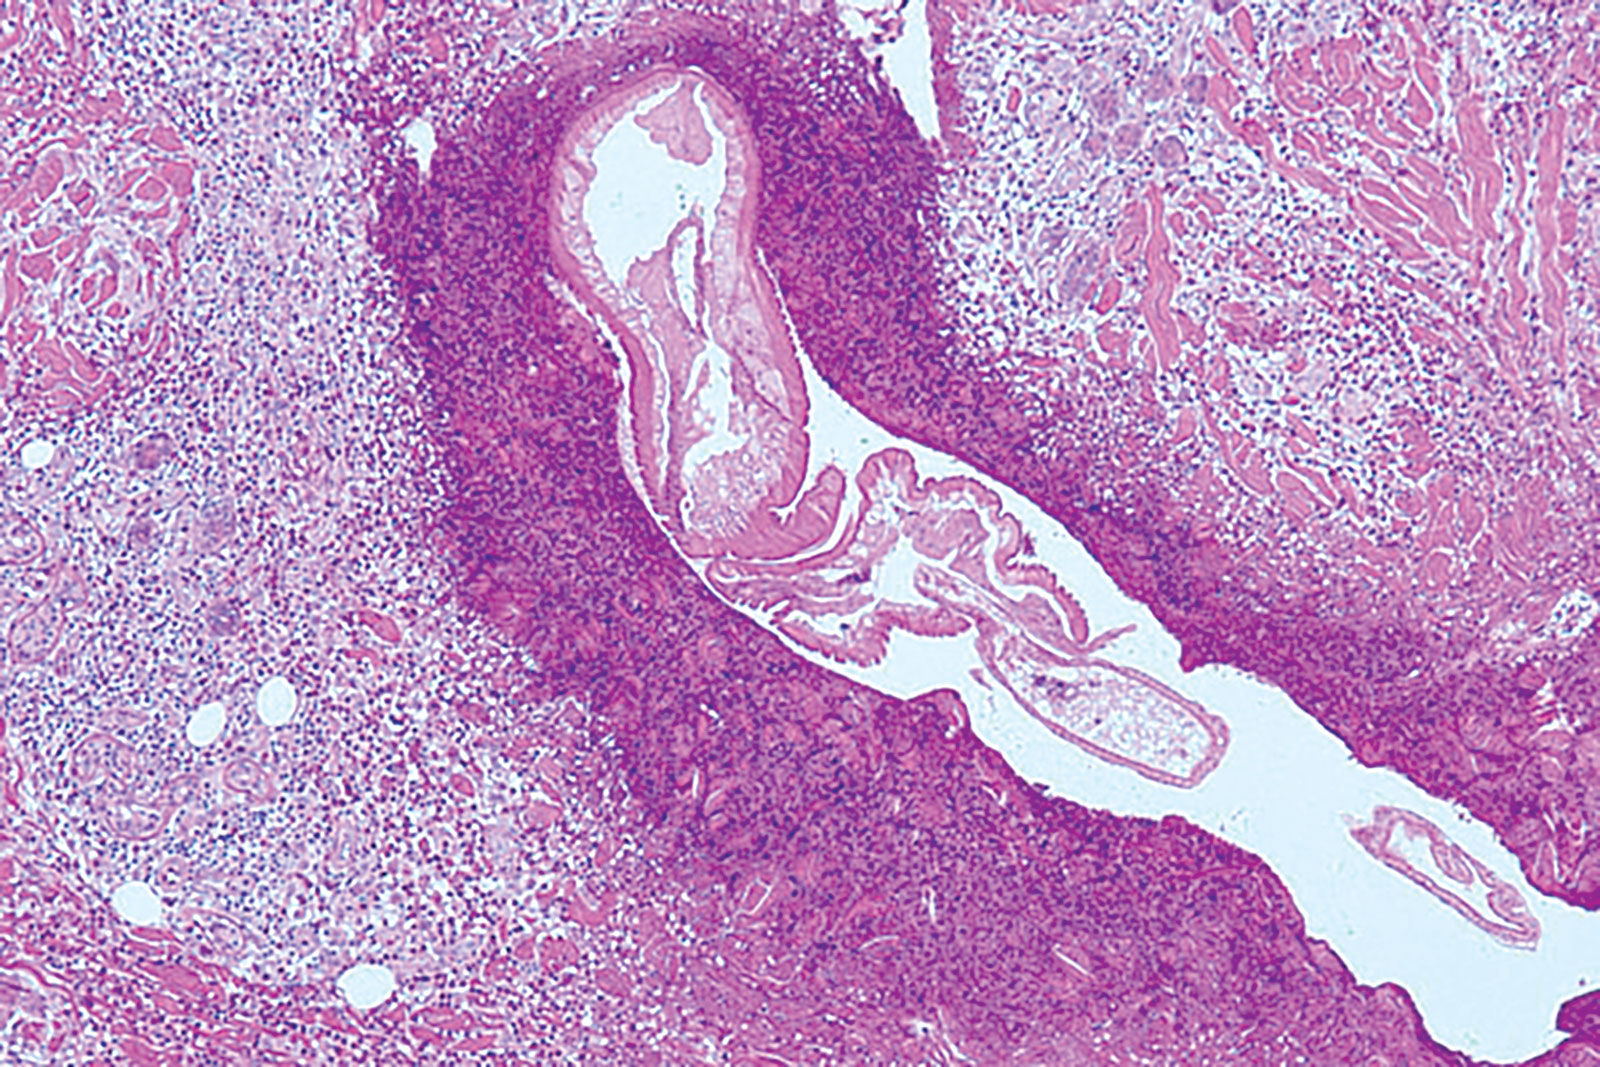 Biopsia de larva en la piel abdominal. CDC-DPD